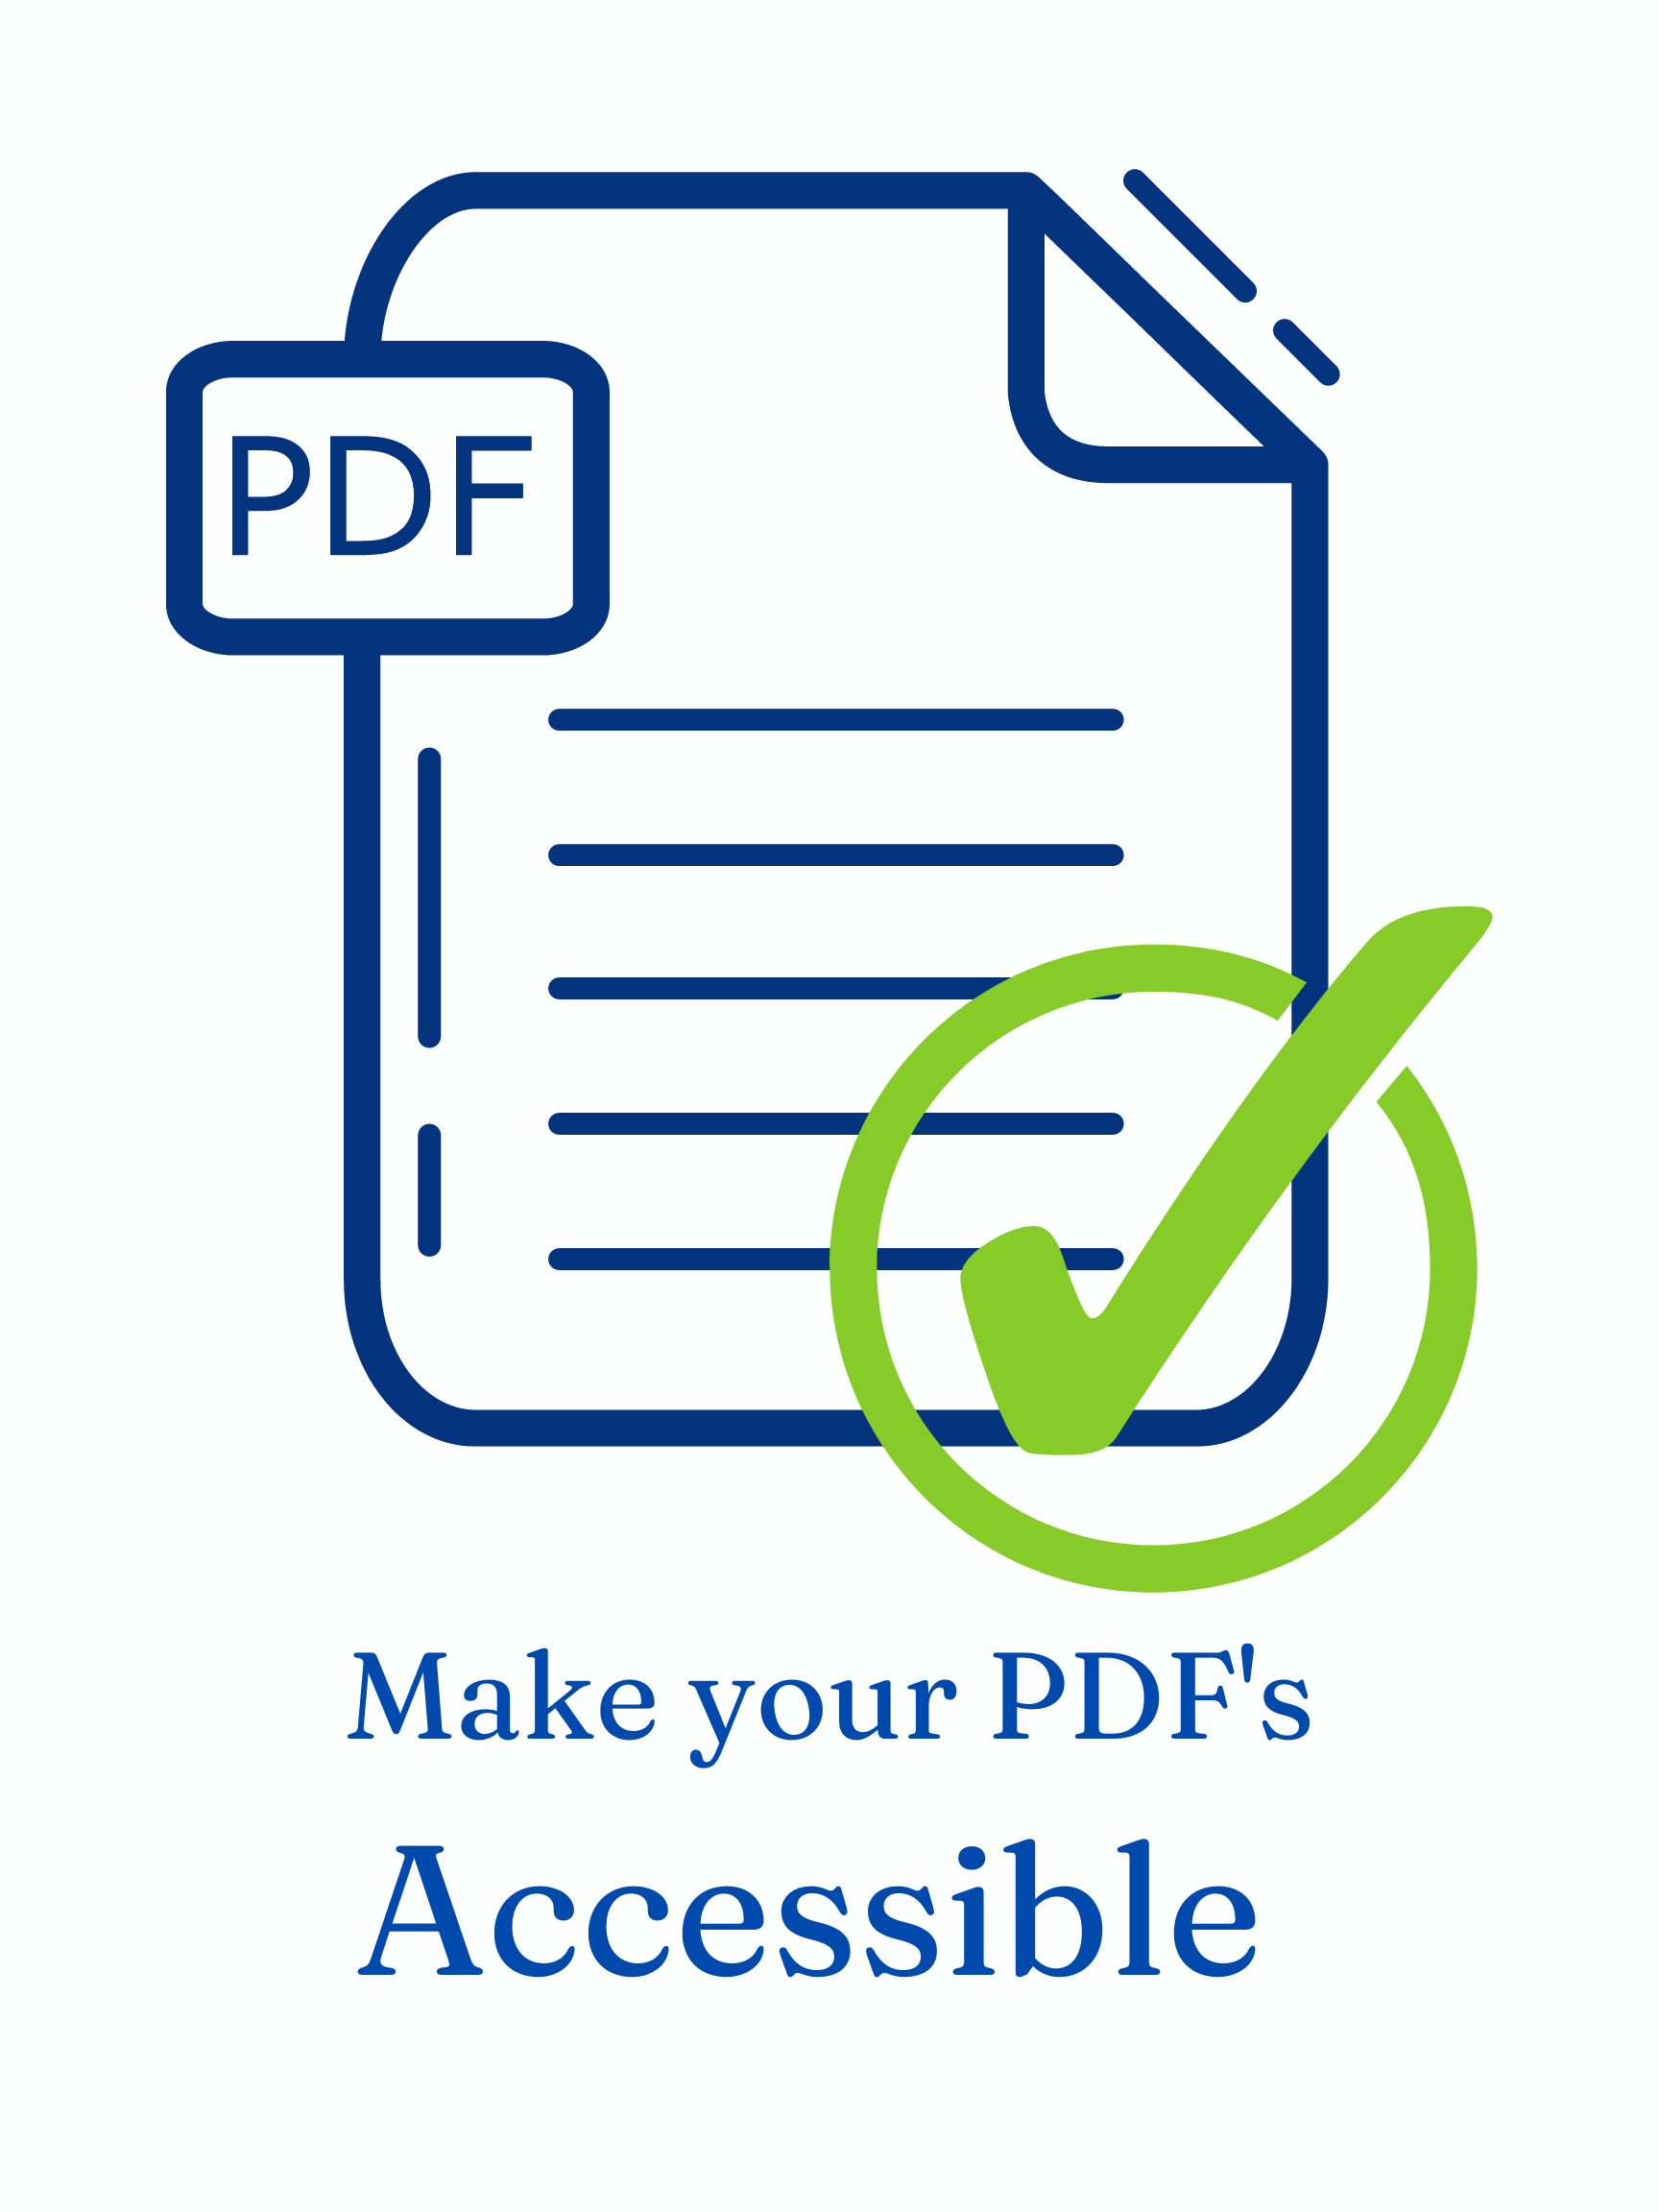 PDF accessibility icon